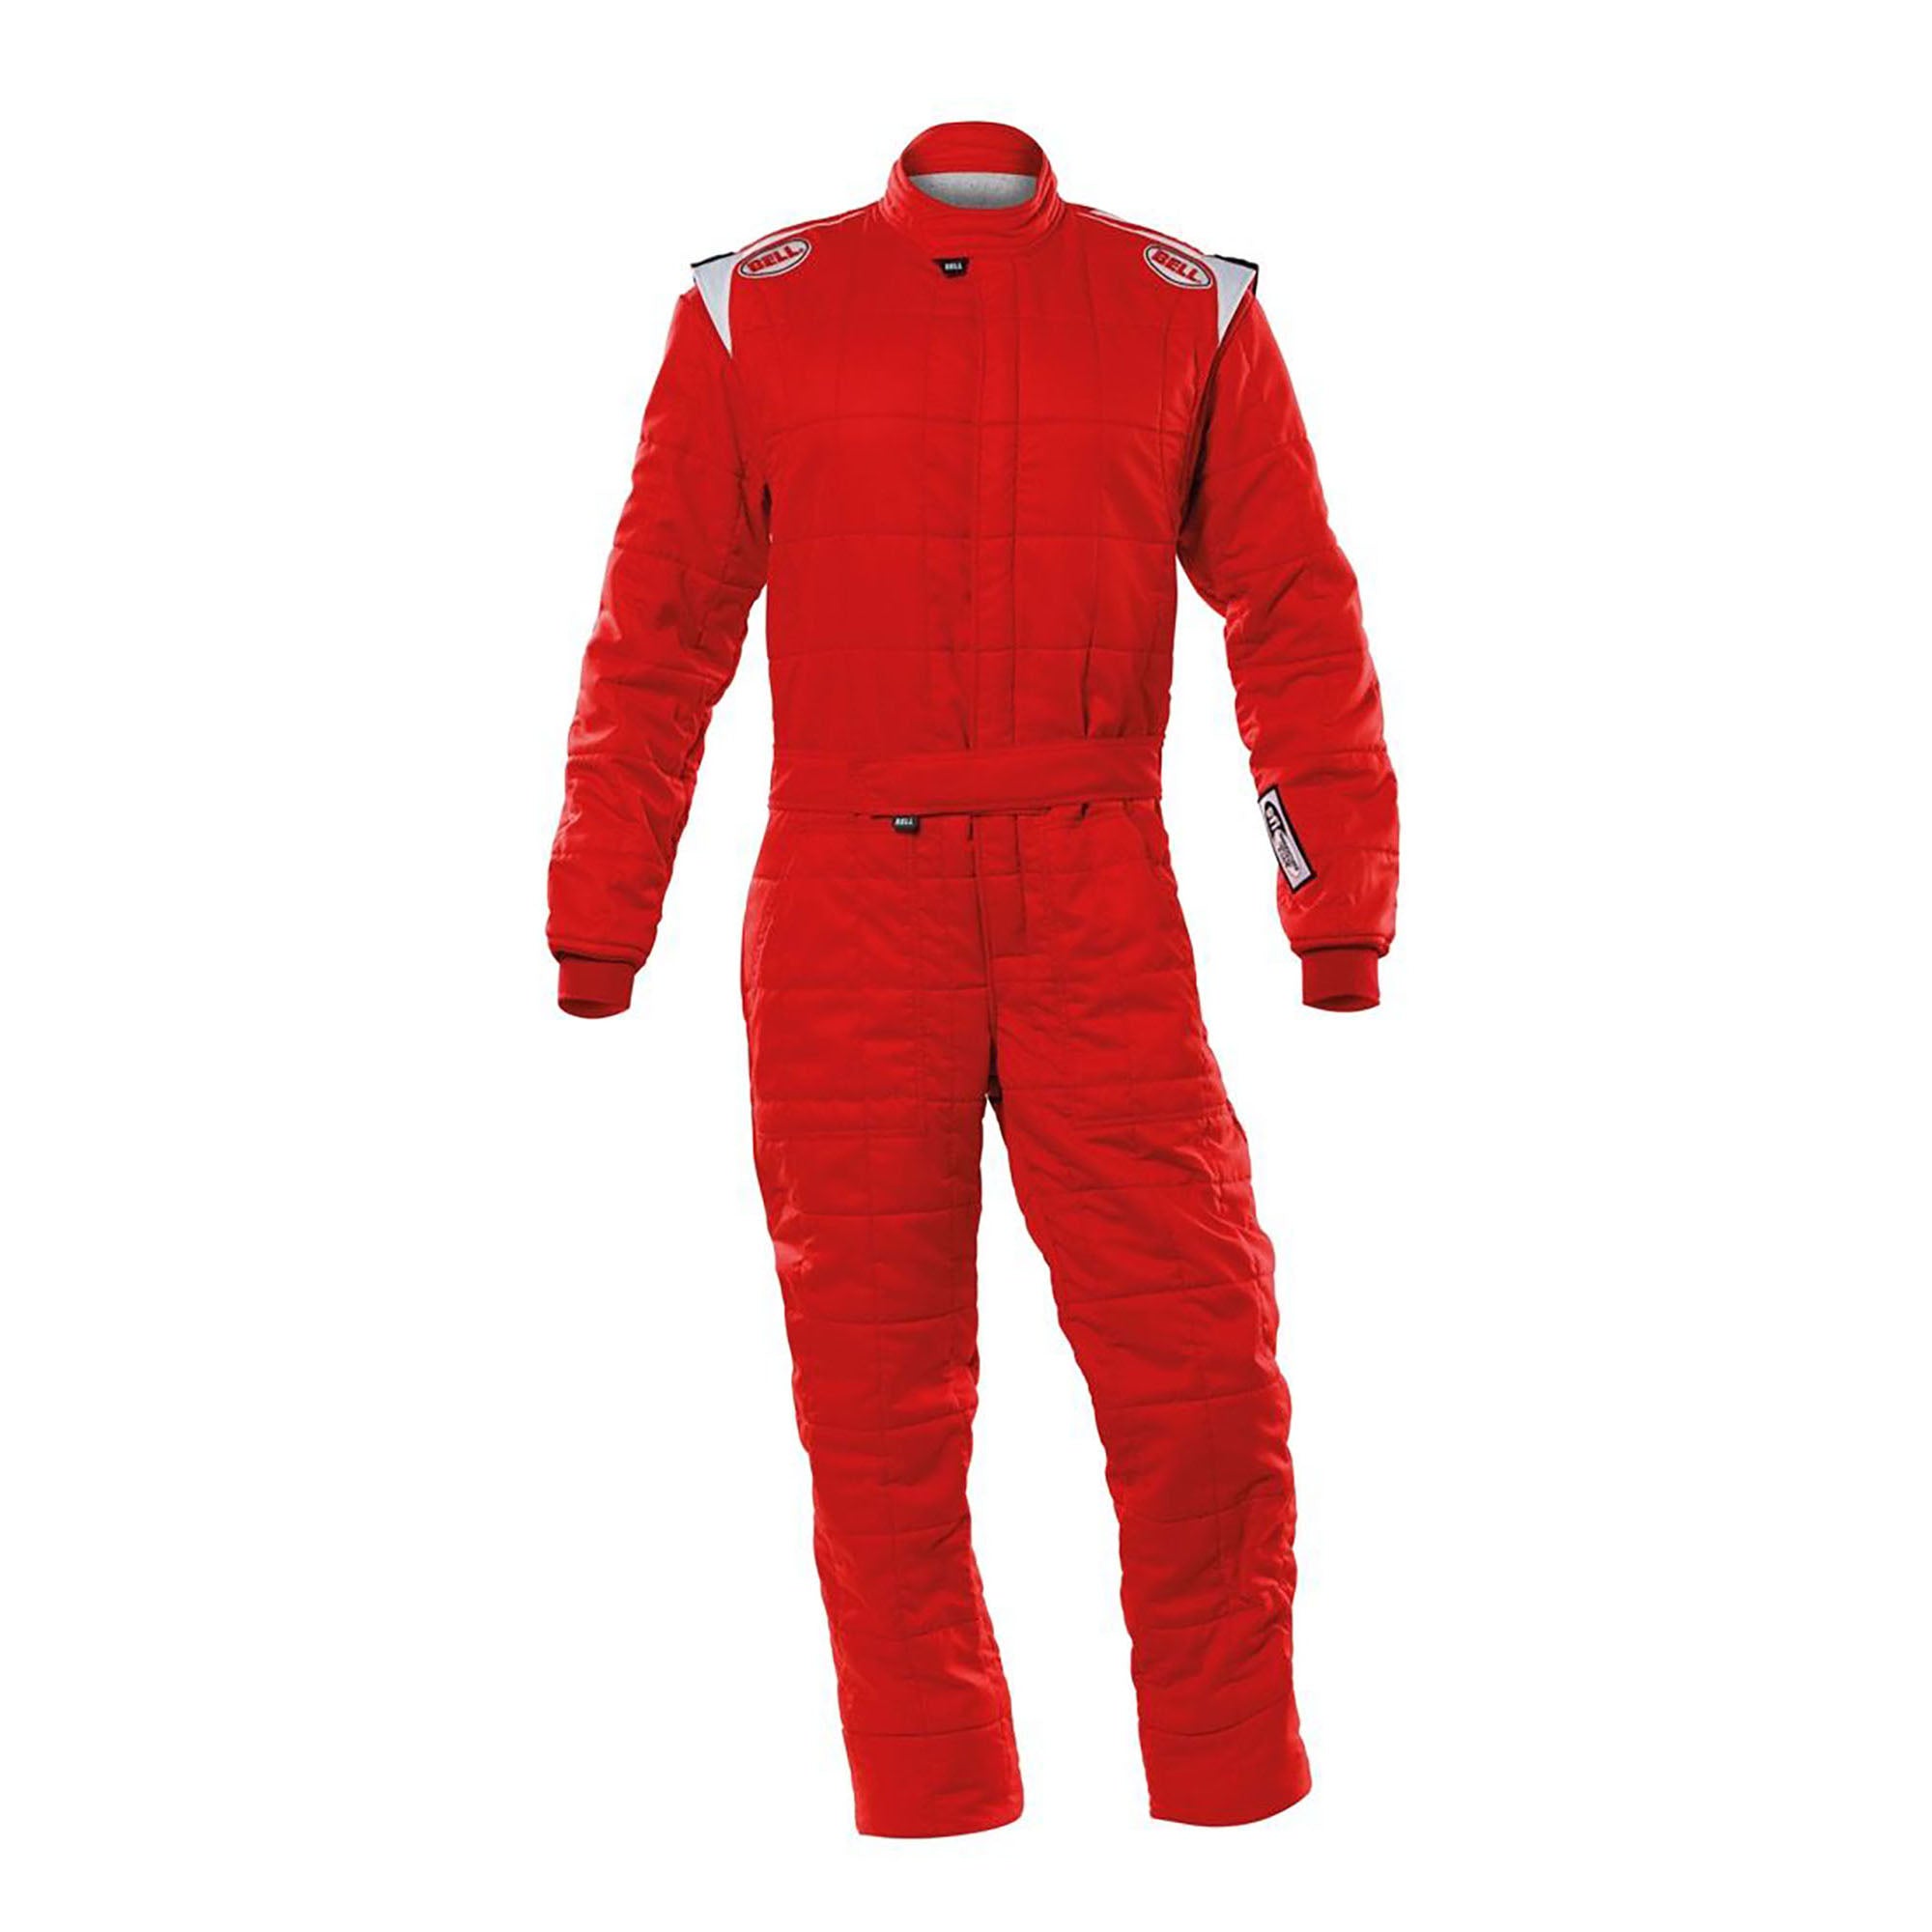 Bell Sport-TX Racing Suit